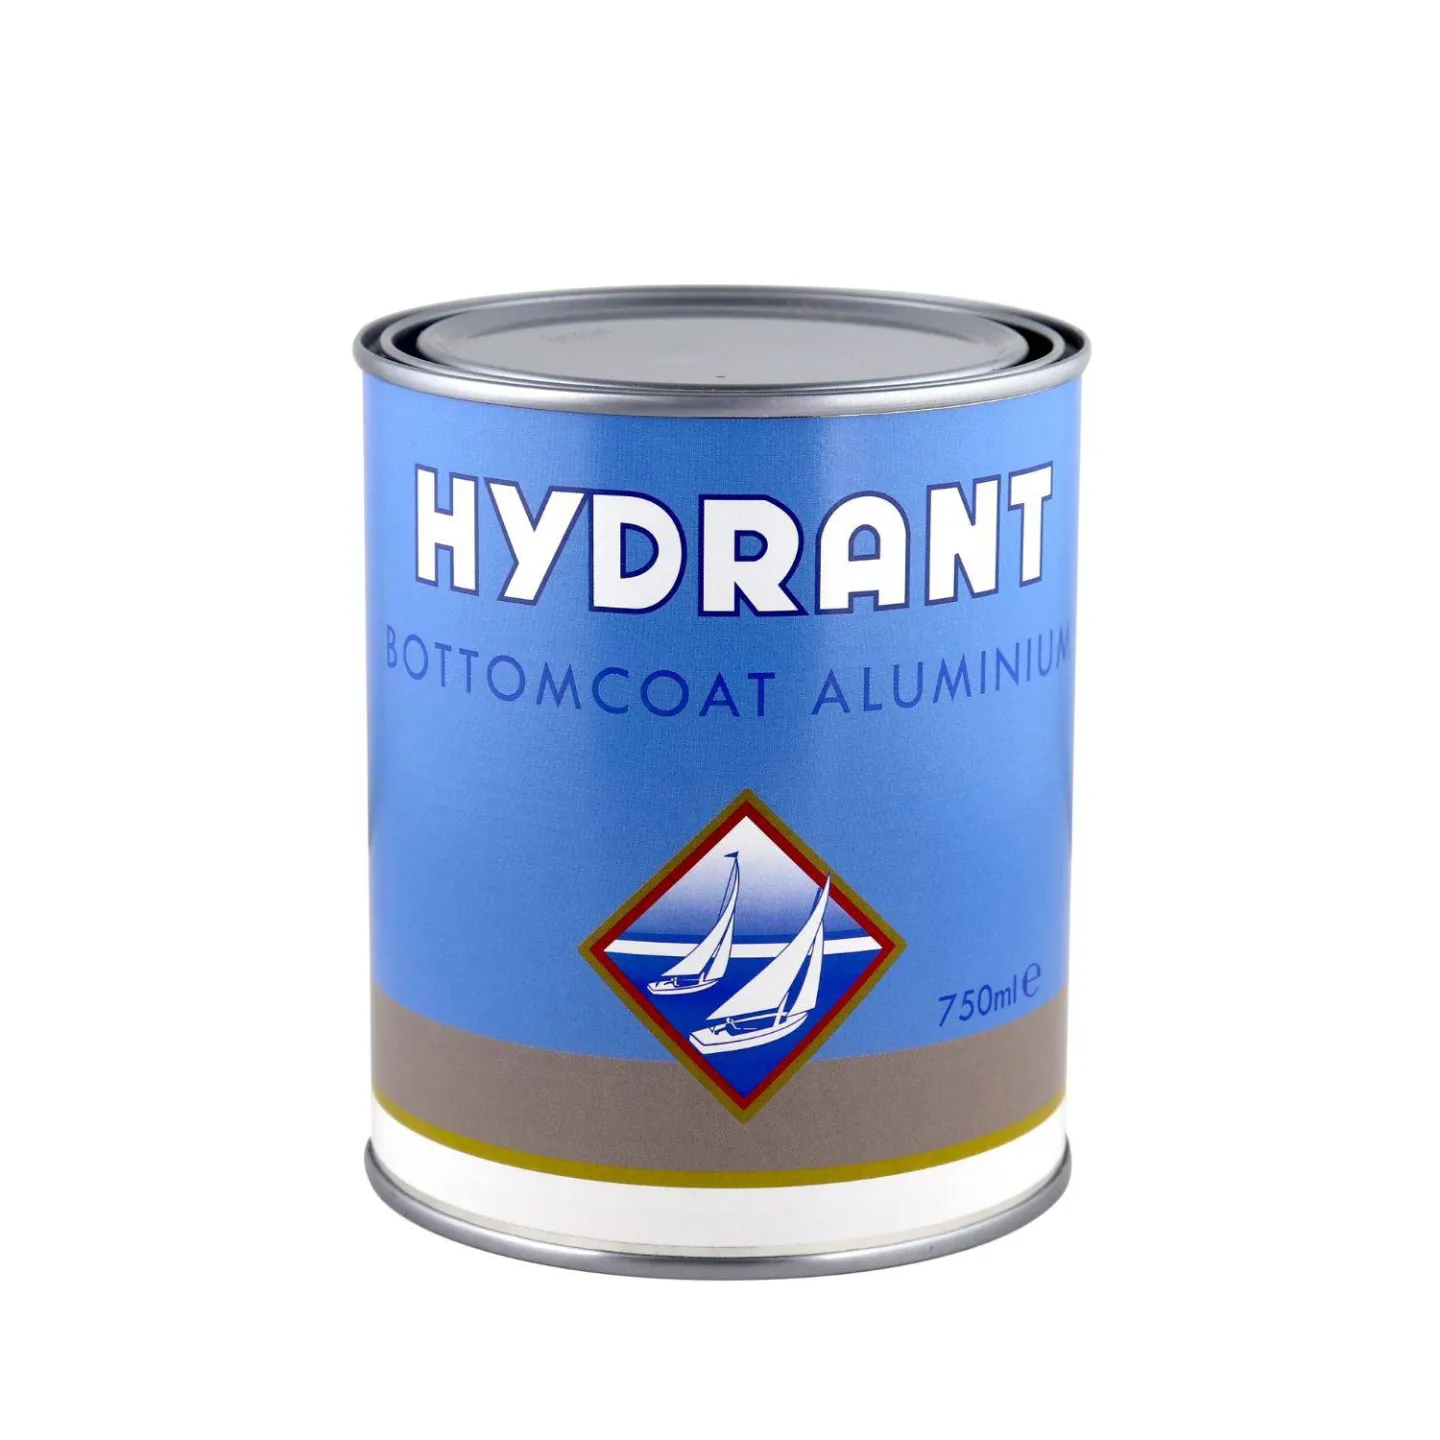 Hydrant bottomcoat aluminium.